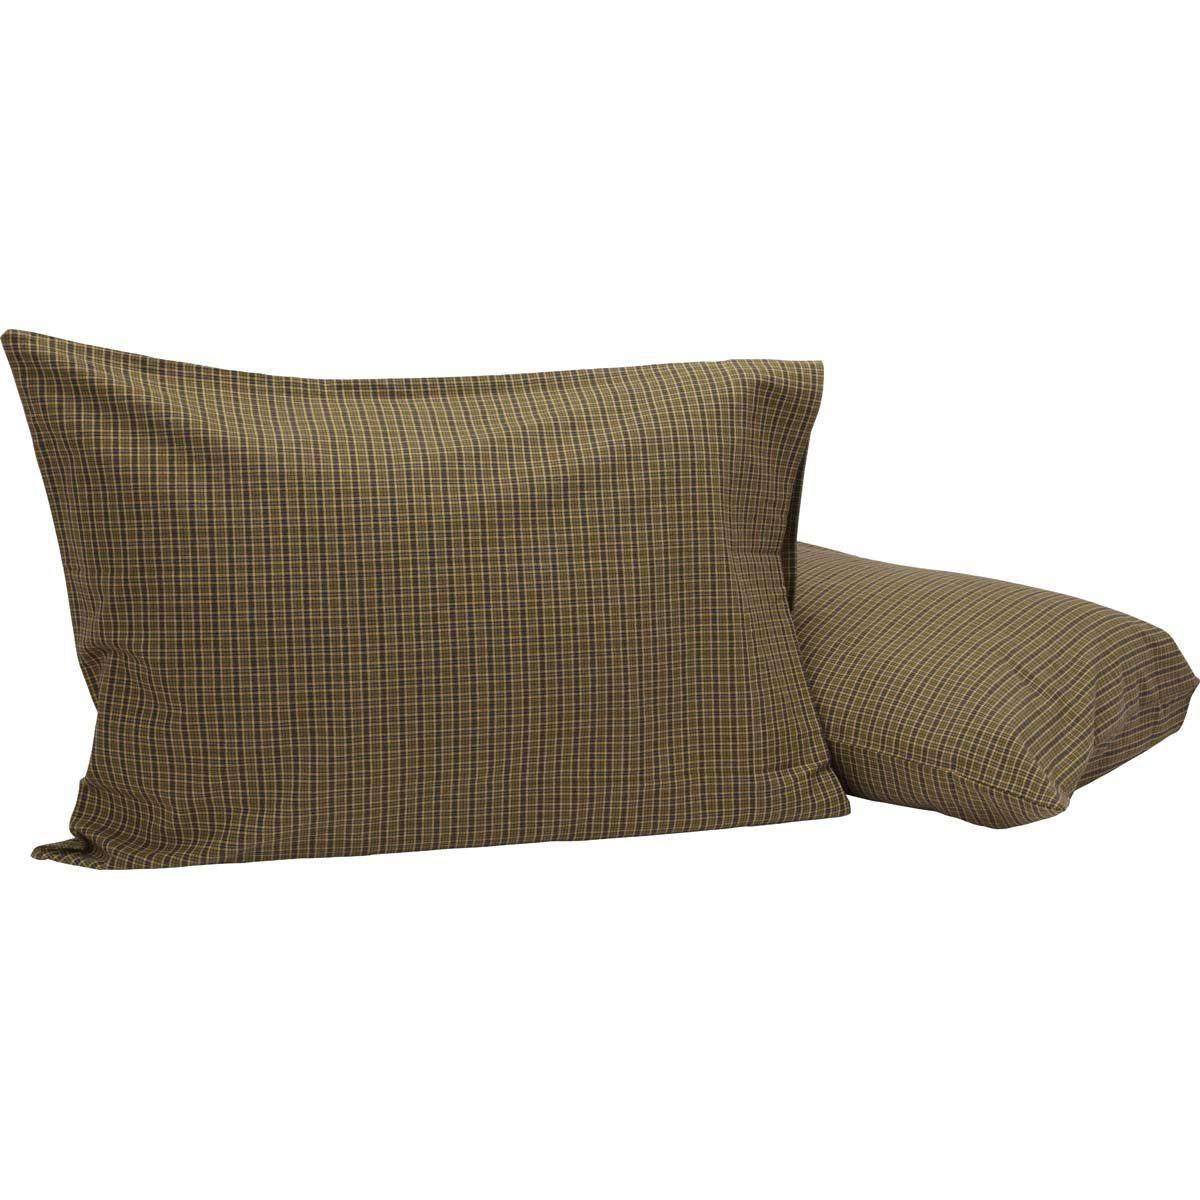 Tea Cabin Green Plaid Standard Pillow Case Set of 2 21x30 VHC Brands - The Fox Decor